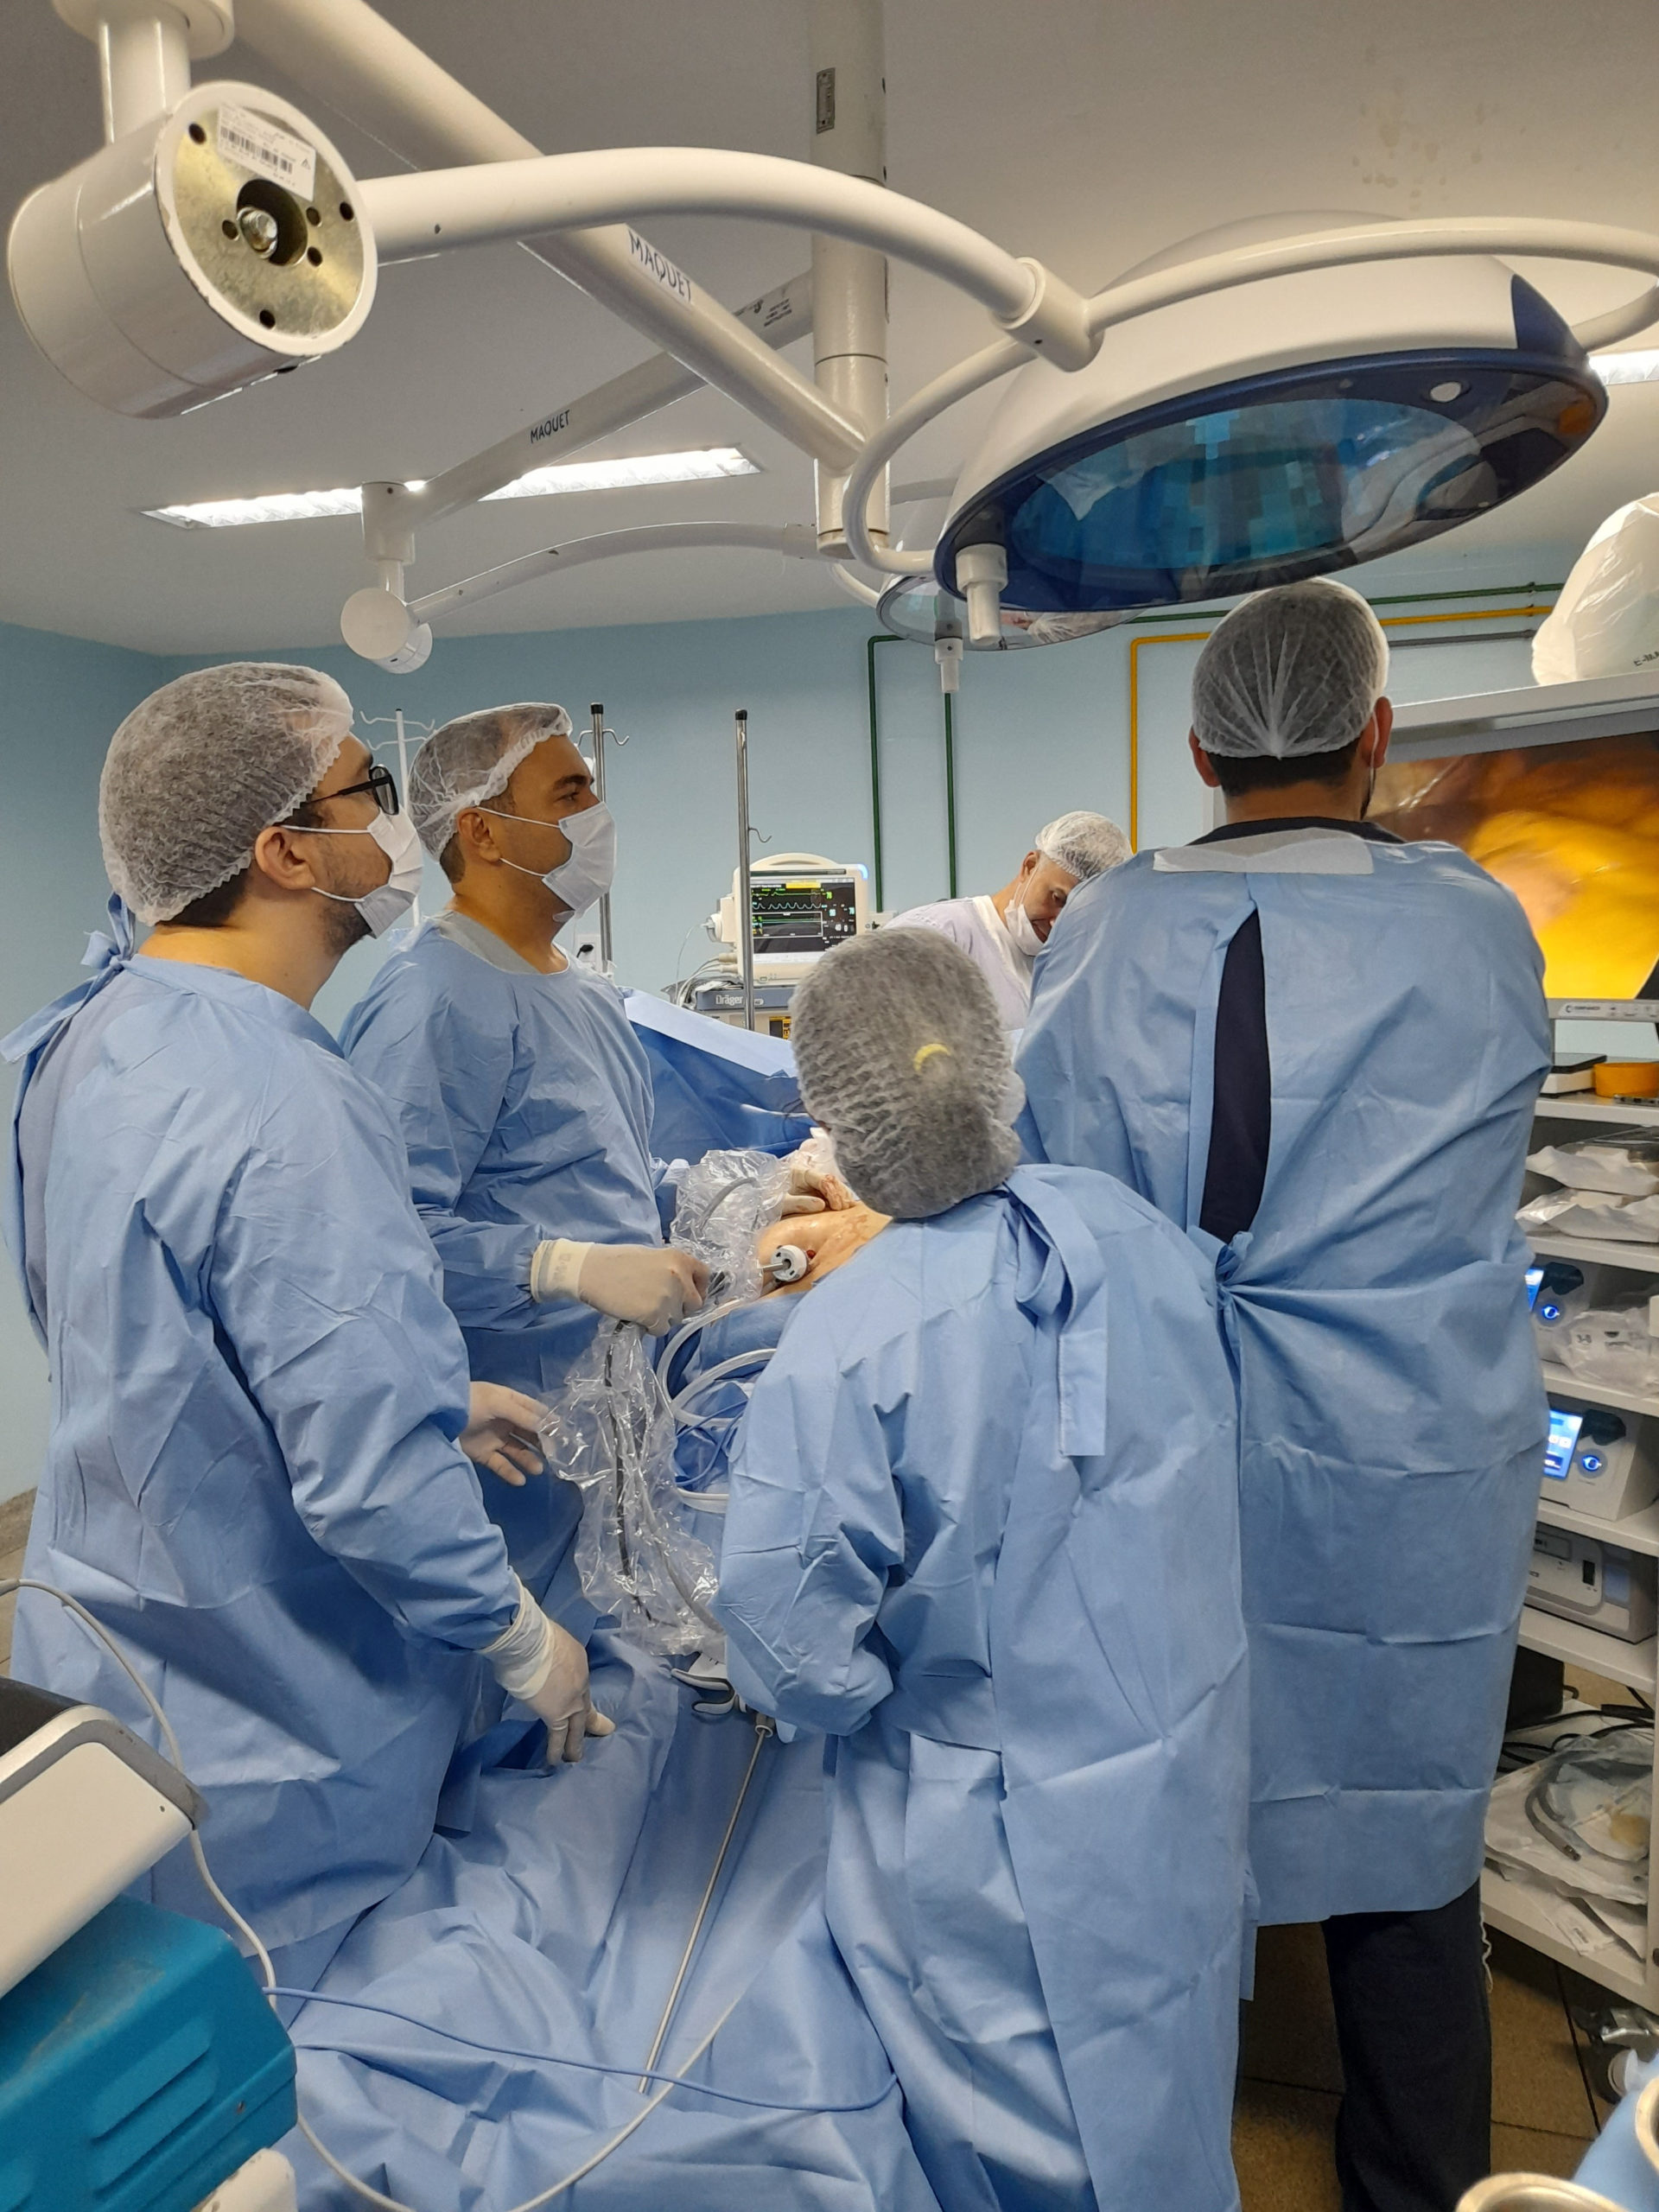 Programa Opera Paraíba realiza piloto de cirurgia bariátrica inédita no hospital das Clínicas em Campina Grande